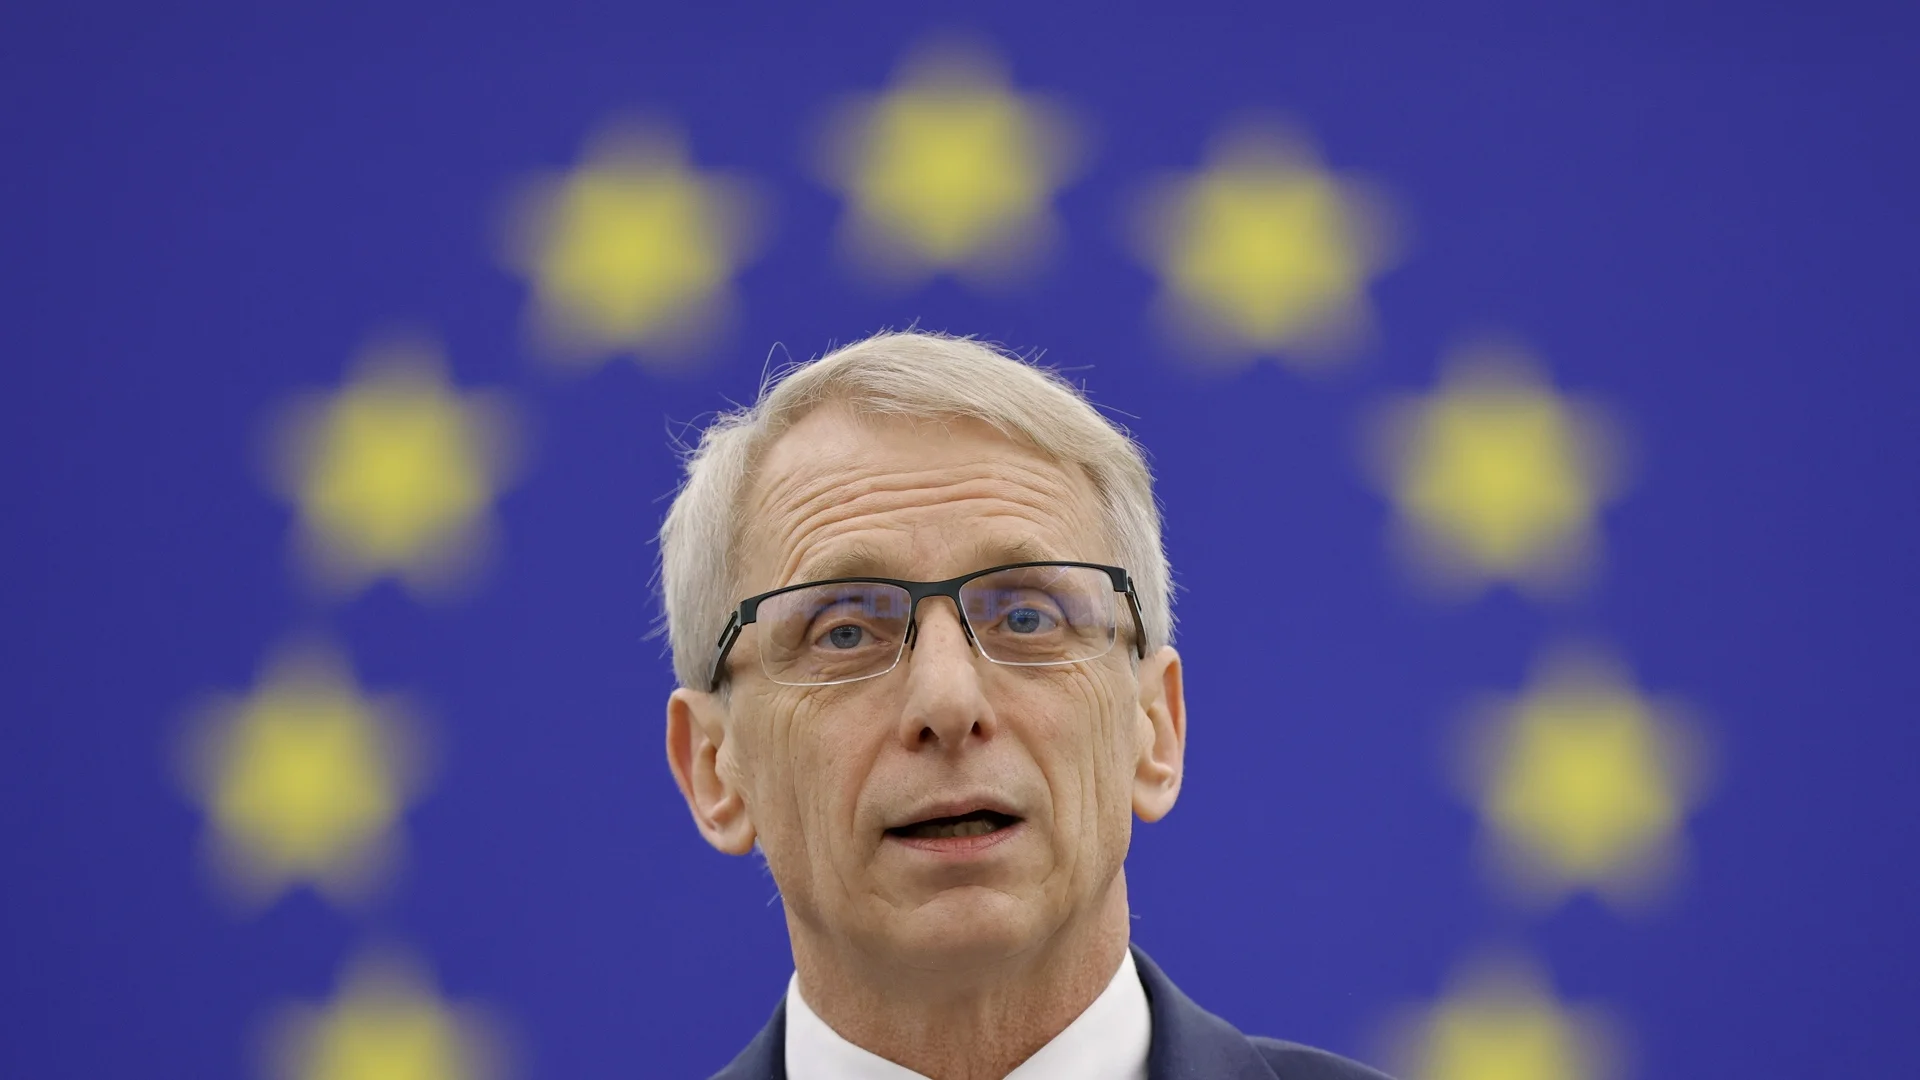 "Чувстваме се като заложници": Денков говори за Шенген и критикува Австрия пред чужда медия